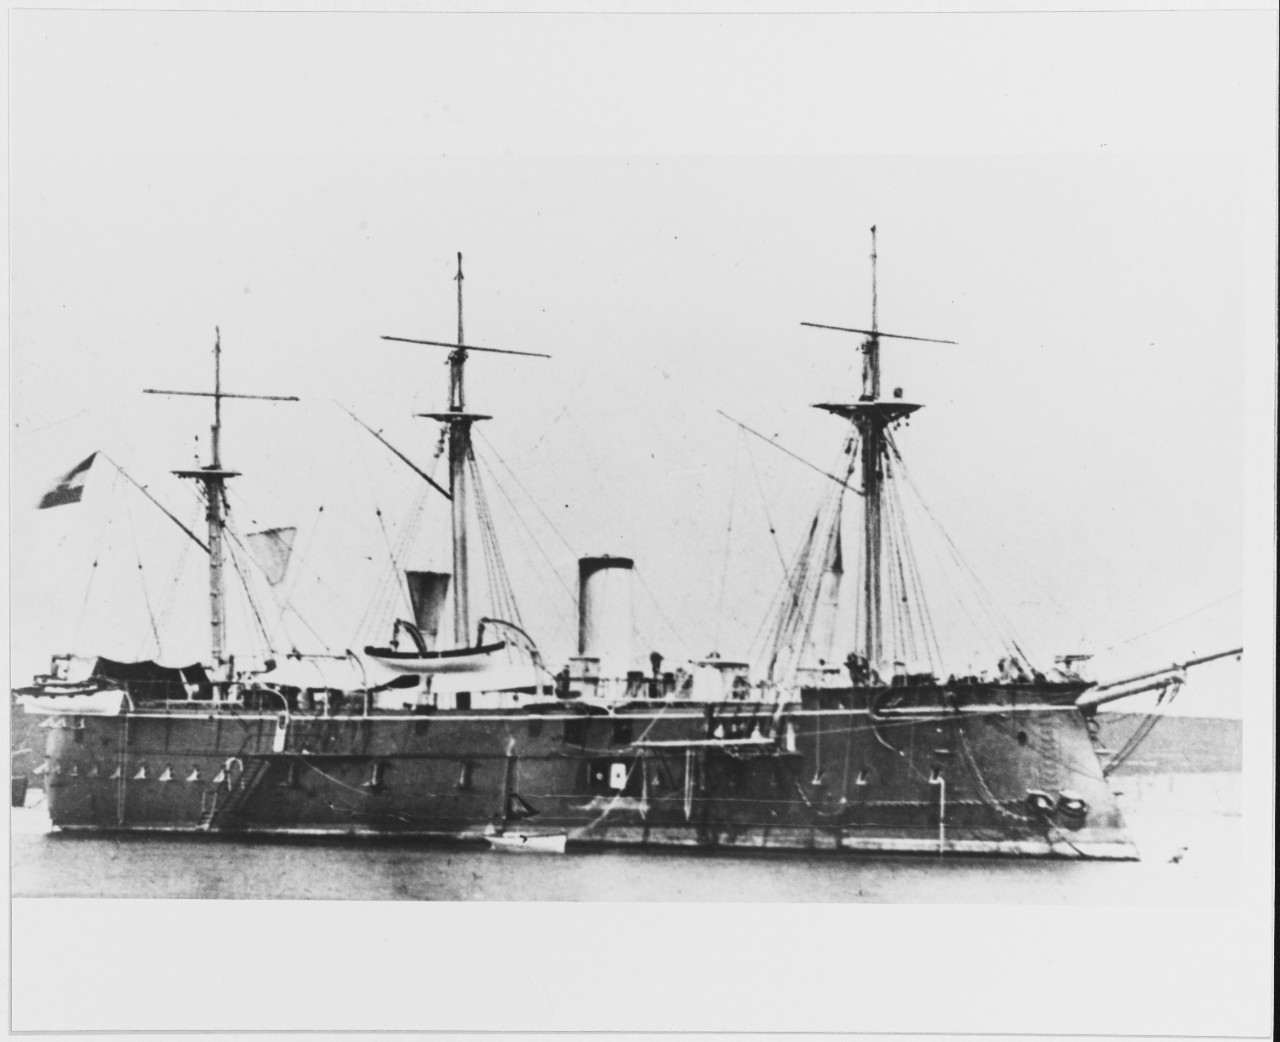 PRINZ EUGEN (Austrian battleship, 1877-1920)